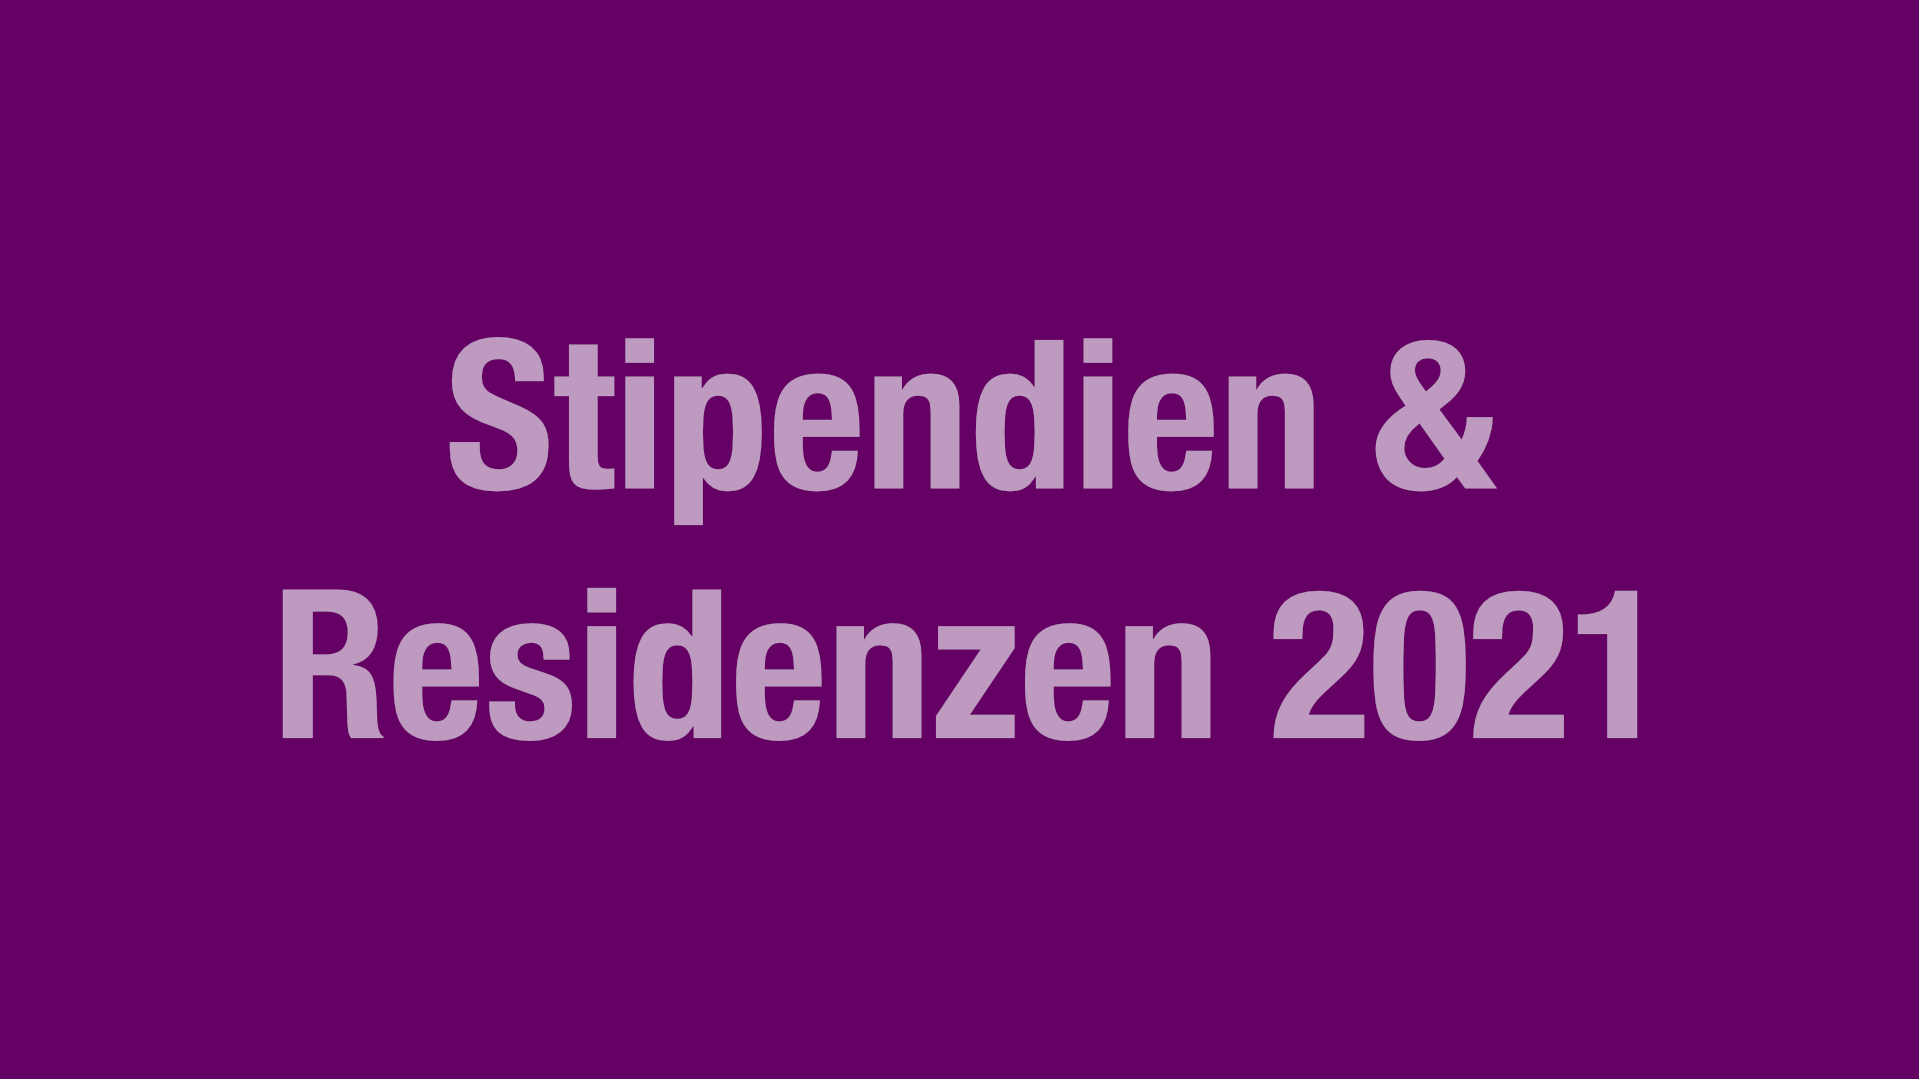 Stipendien & Residenzen 2021